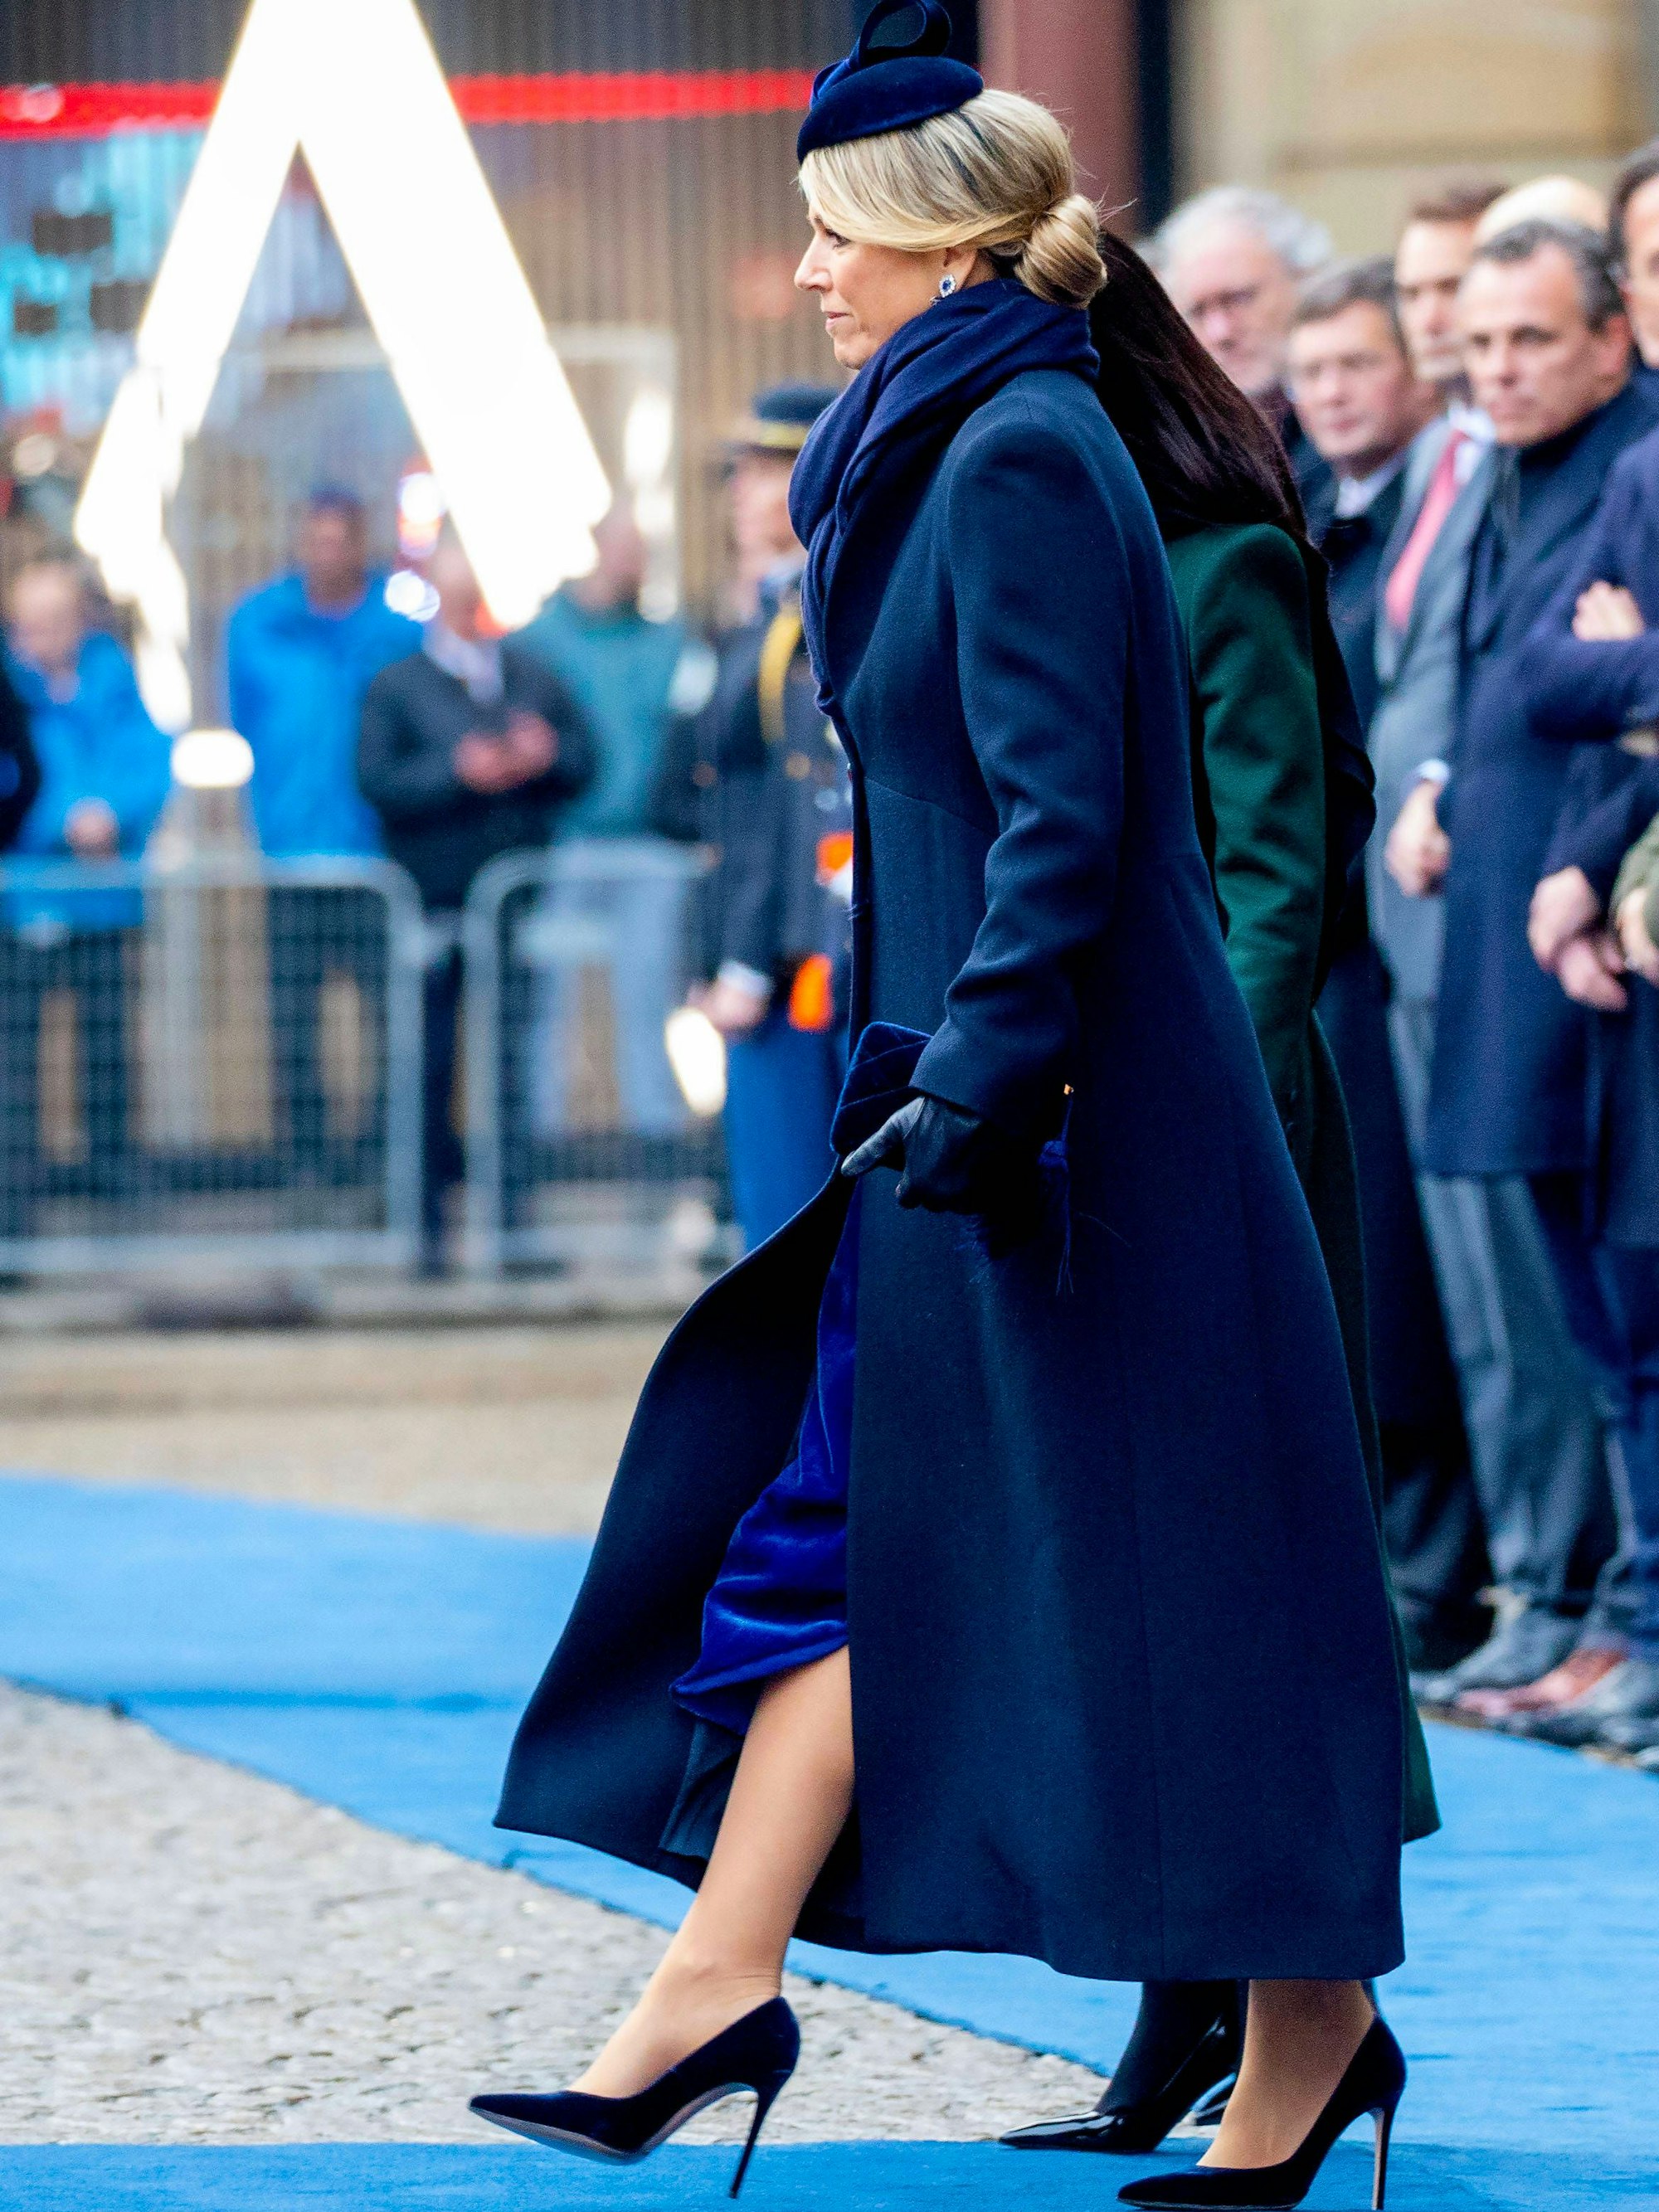 Königin Máxima während der Begrüßungszeremonie auf dem Dam-Platz in Amsterdam am ersten Tag des zweitägigen Staatsbesuchs des südkoreanischen Präsidenten in den Niederlanden.